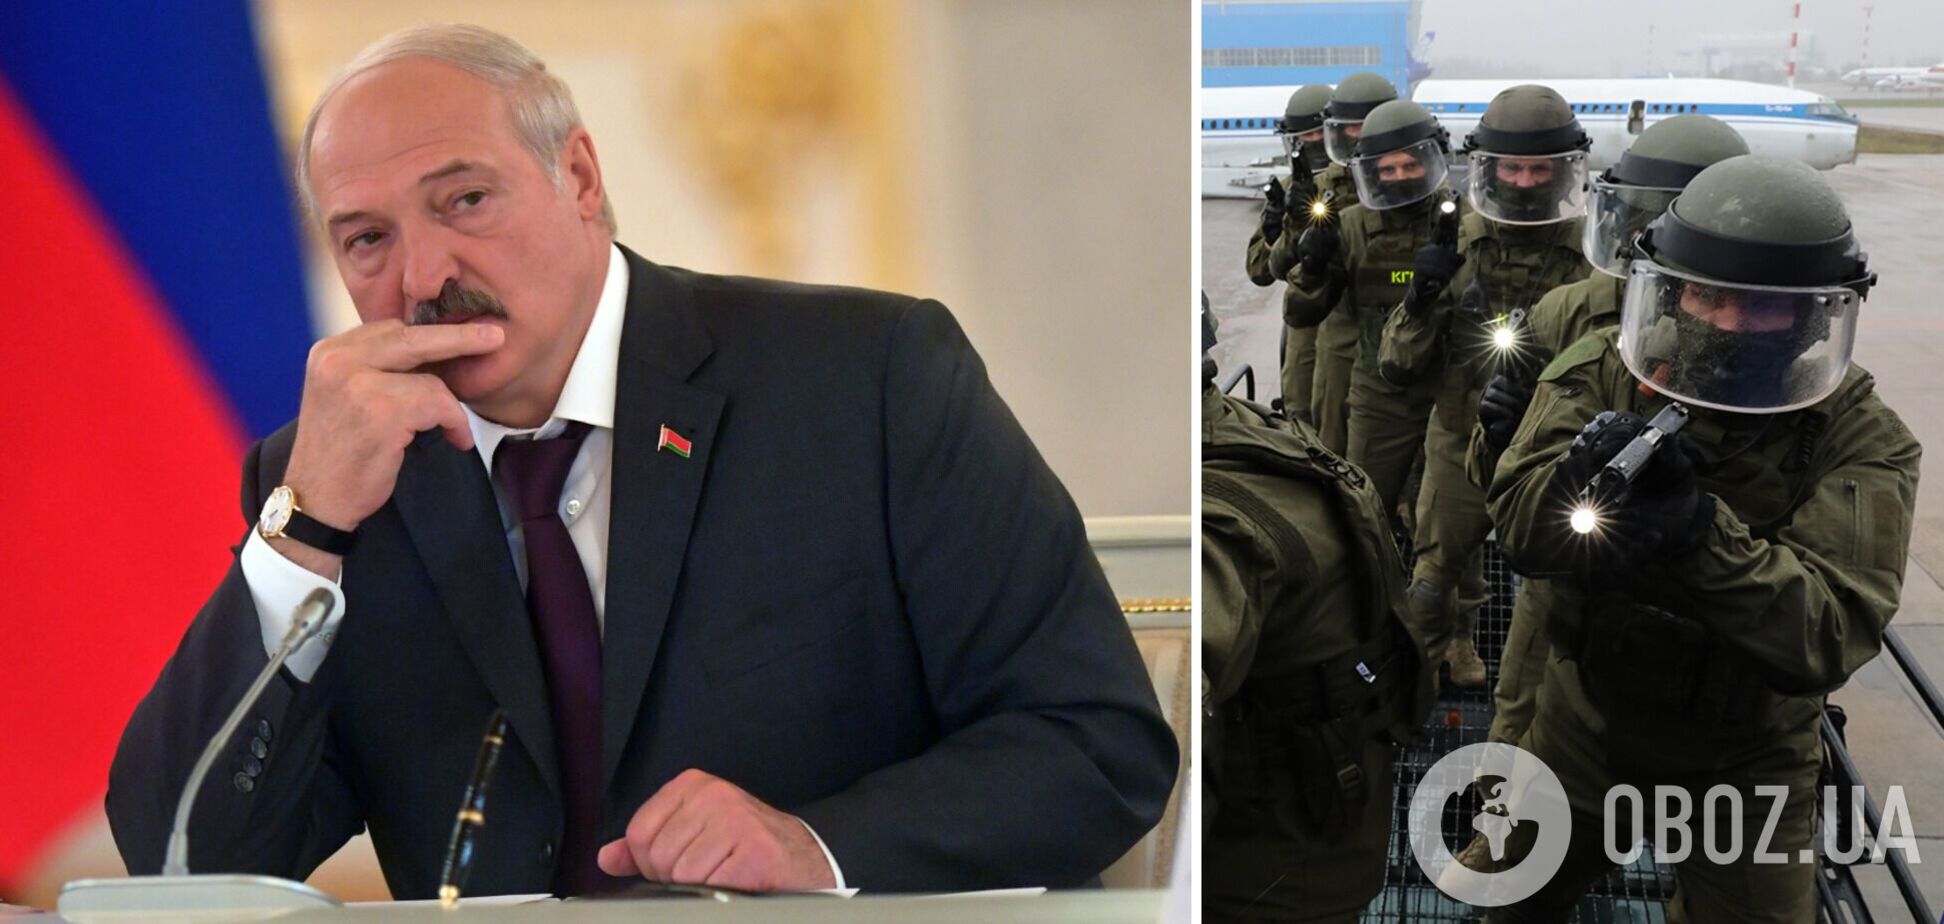 'Обстановка заставляет нас реагировать': Лукашенко собрал силовиков и заявил об угрозе диверсий